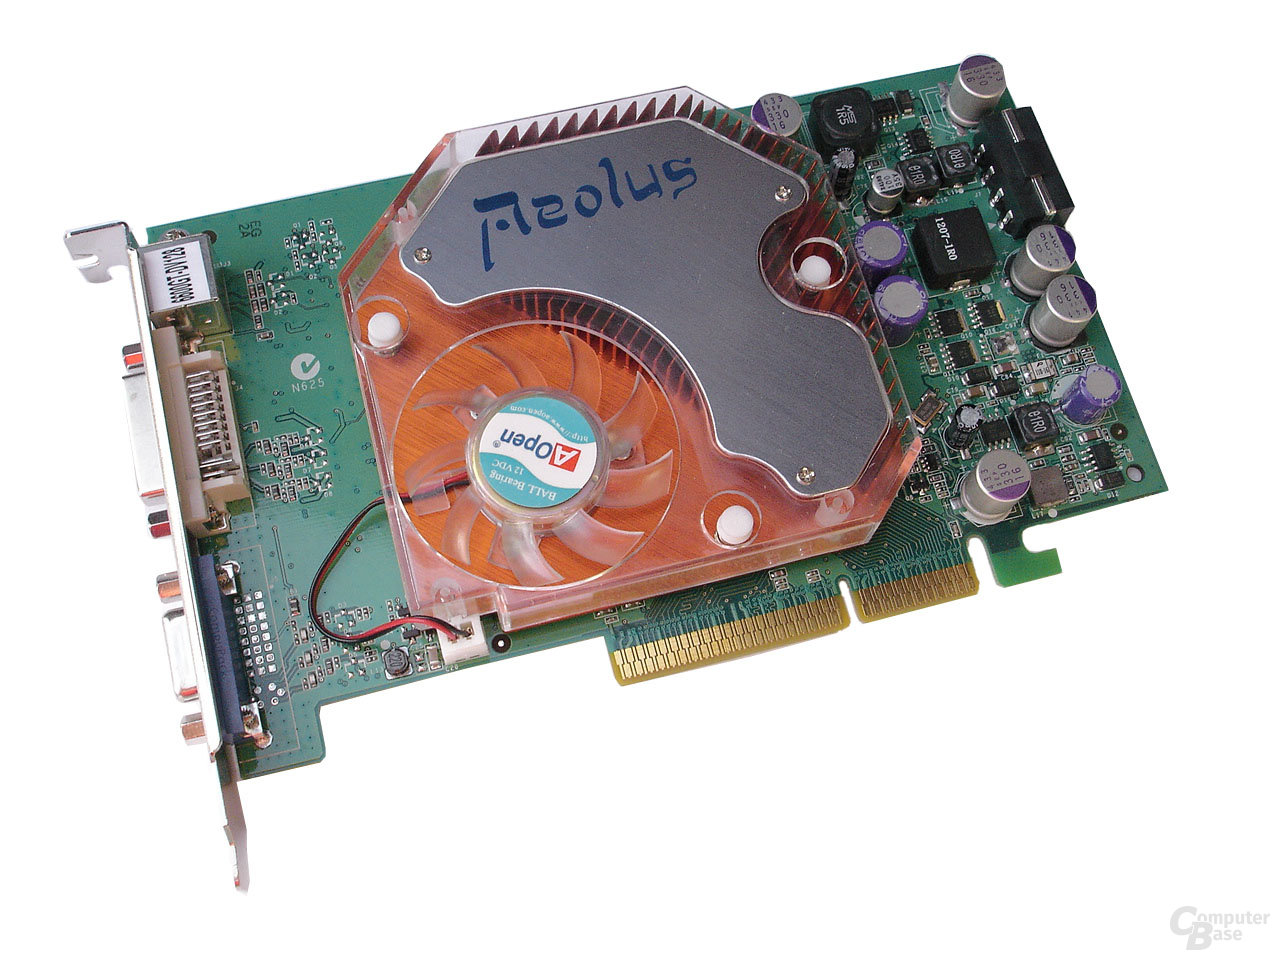 Geforce 6600 gt - Unsere Favoriten unter der Vielzahl an verglichenenGeforce 6600 gt!